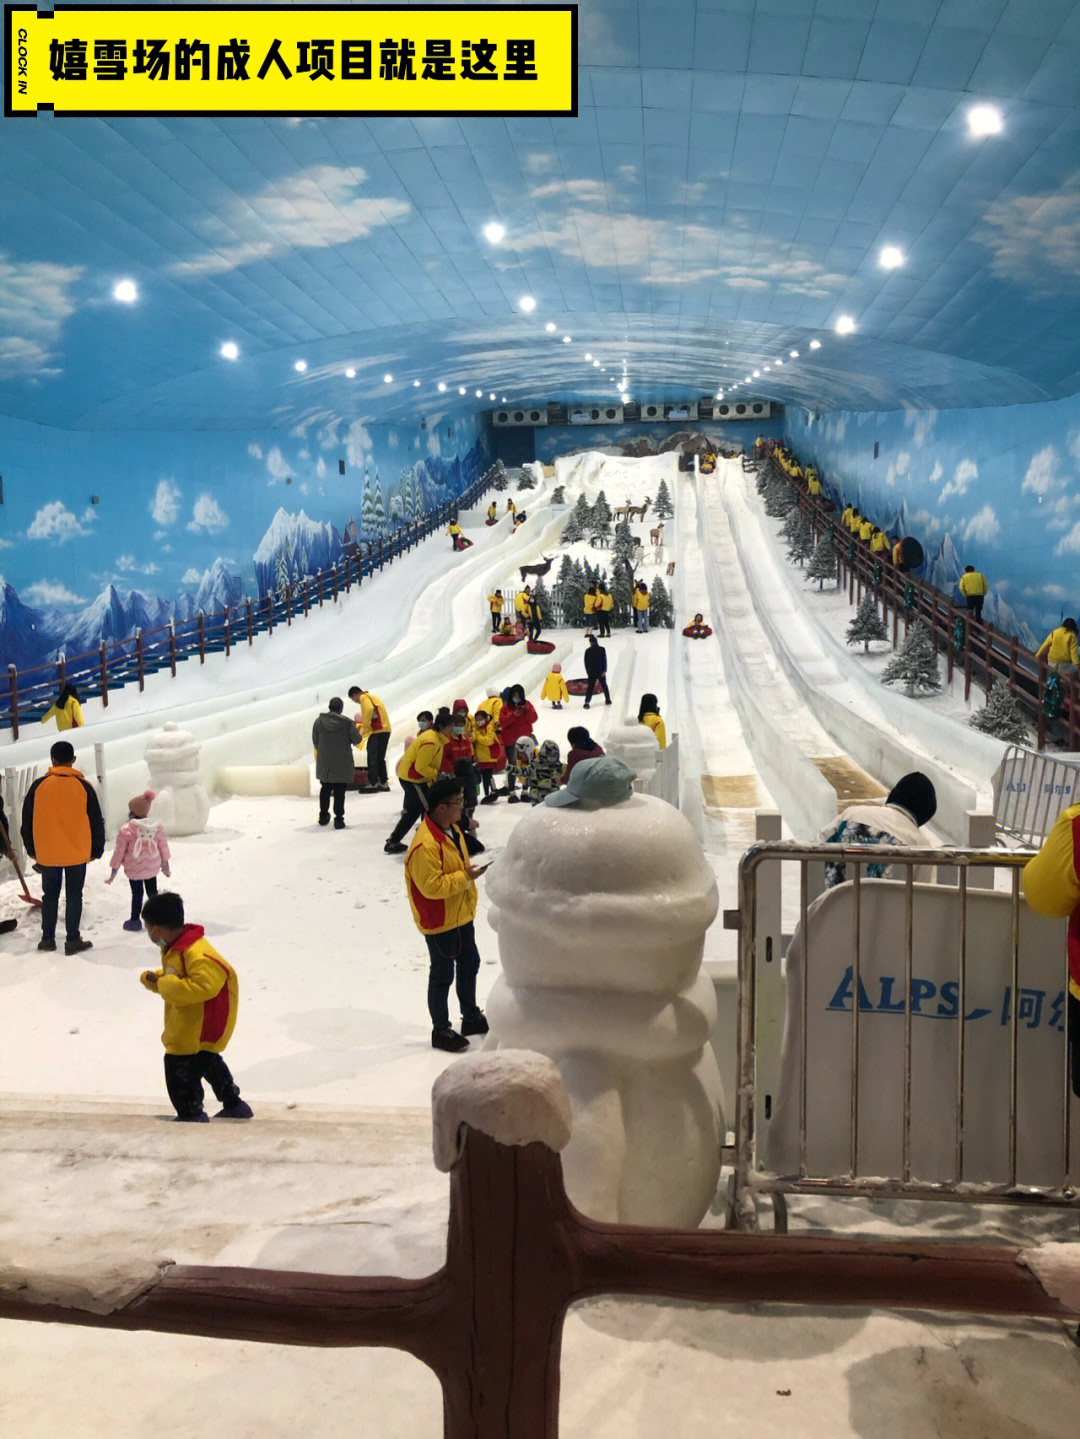 周末深圳阿尔卑斯冰雪世界嬉雪场